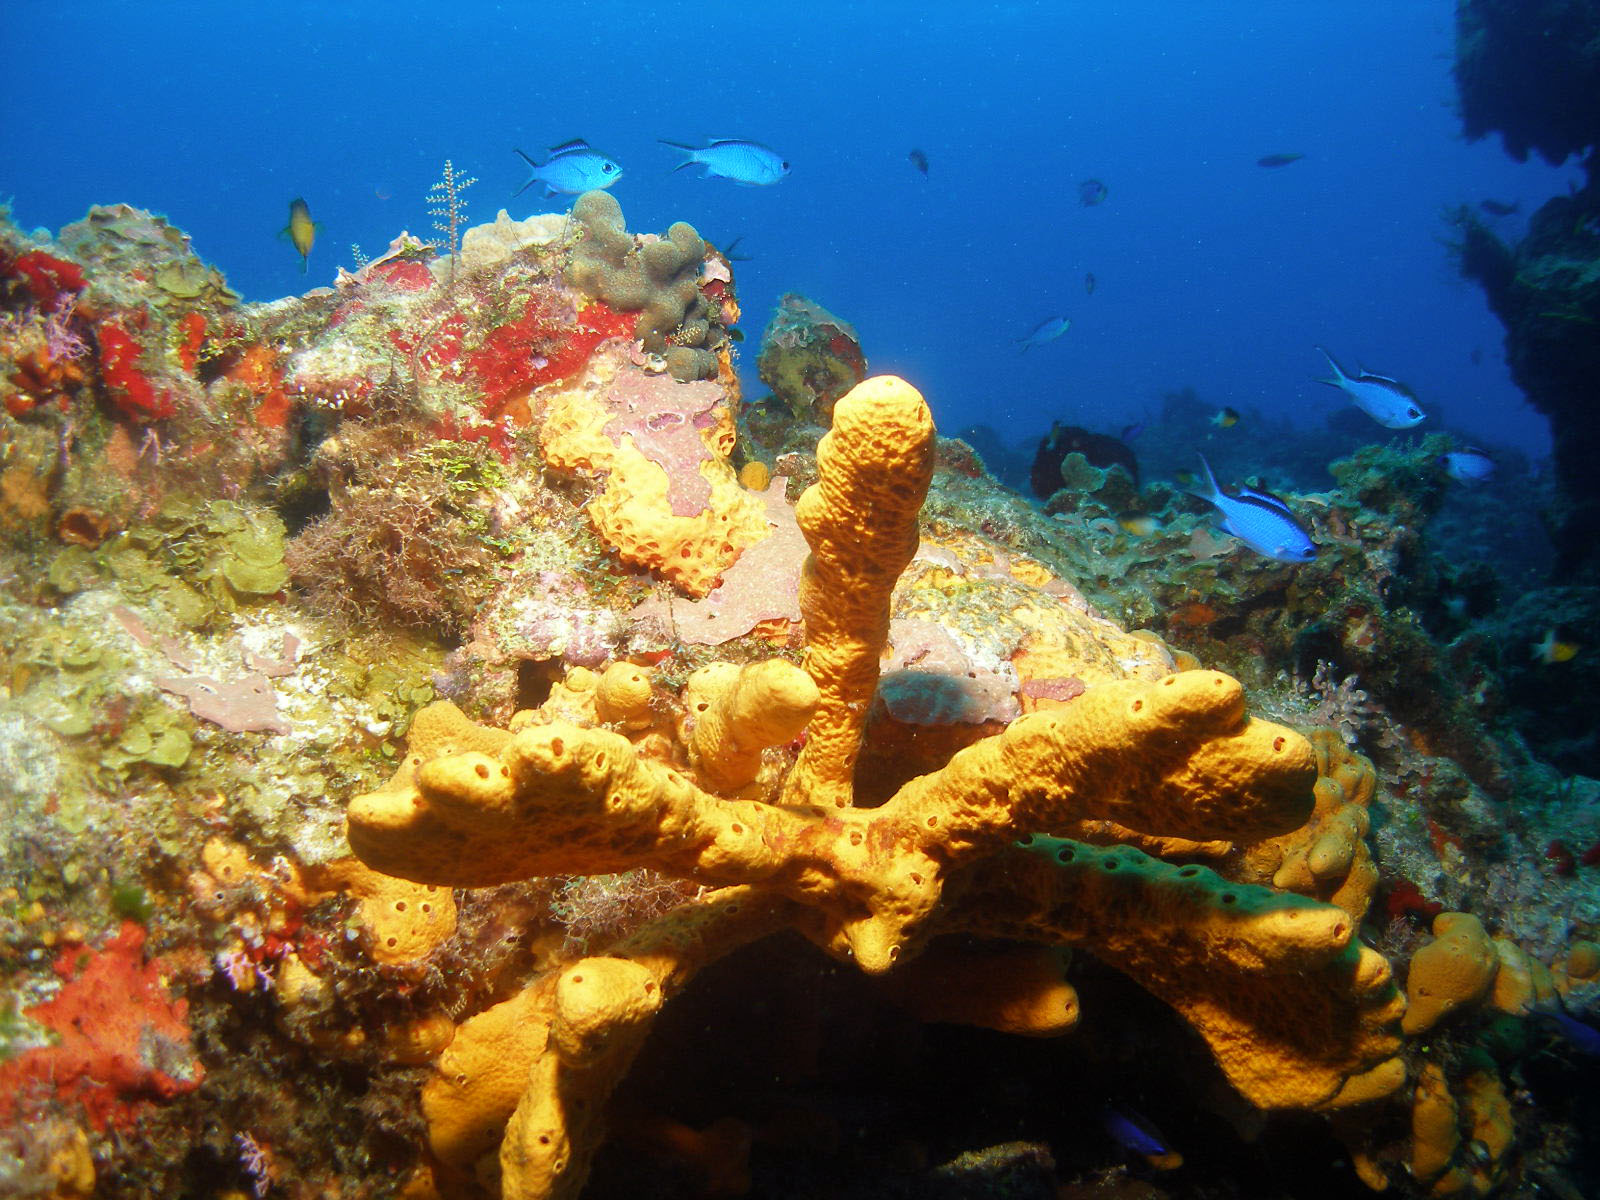 Santa Rosa Wall corals